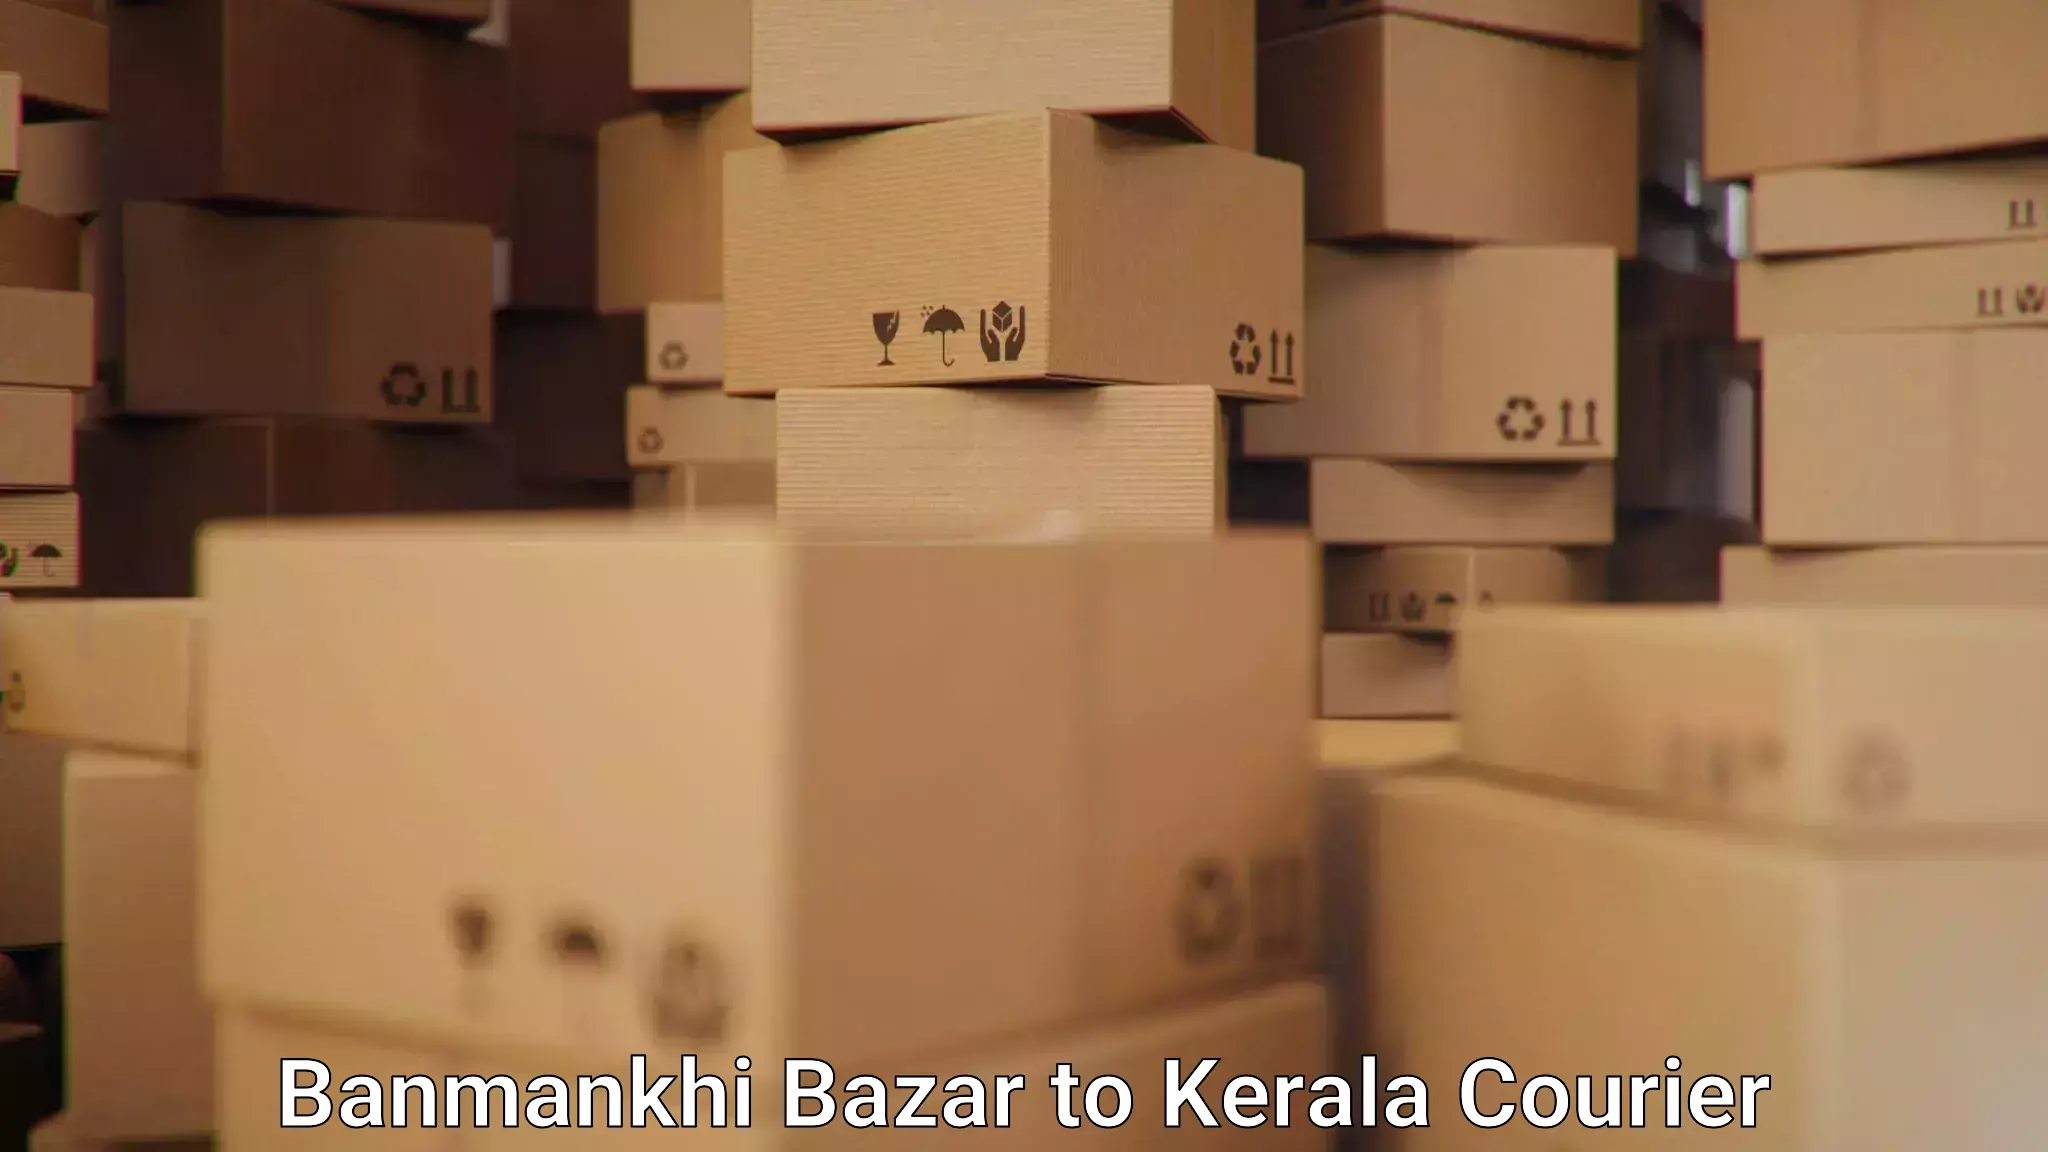 Affordable parcel service Banmankhi Bazar to Kerala